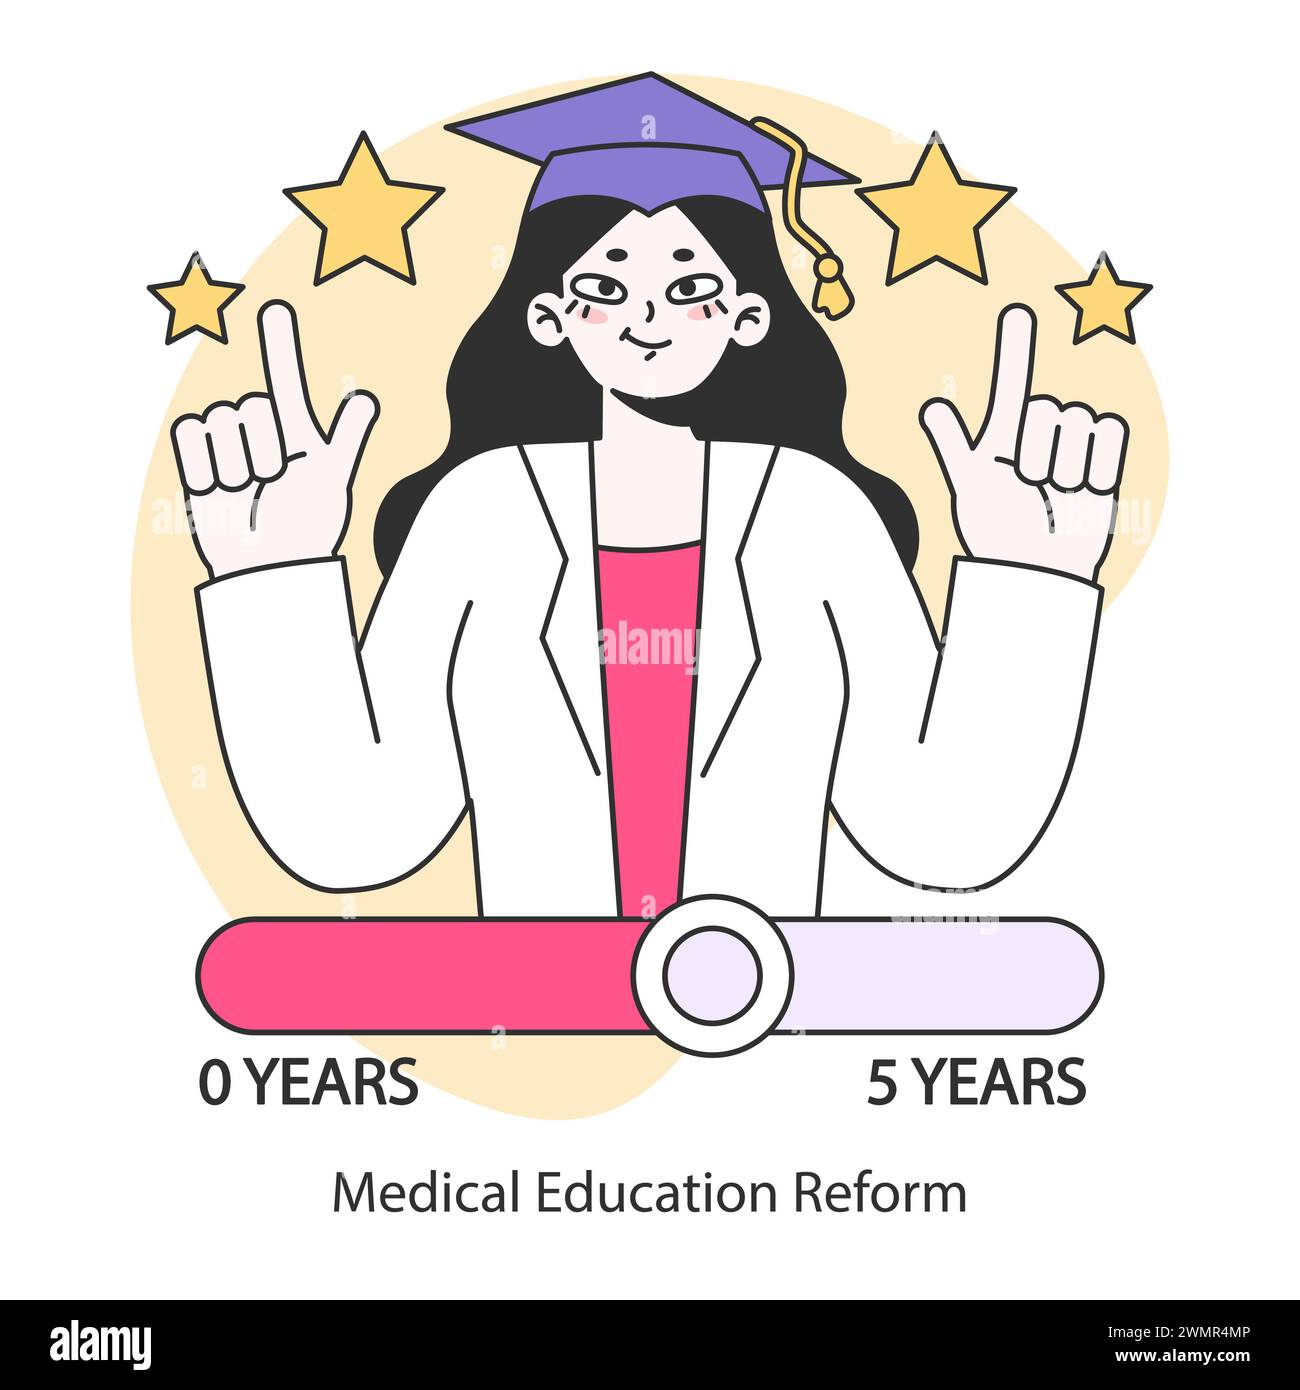 Concetto di riforma dell'educazione medica. Documentare i progressi della formazione sanitaria nell'arco di cinque anni. Evoluzione delle conoscenze e delle pratiche mediche. Illustrazione vettoriale piatta. Illustrazione Vettoriale